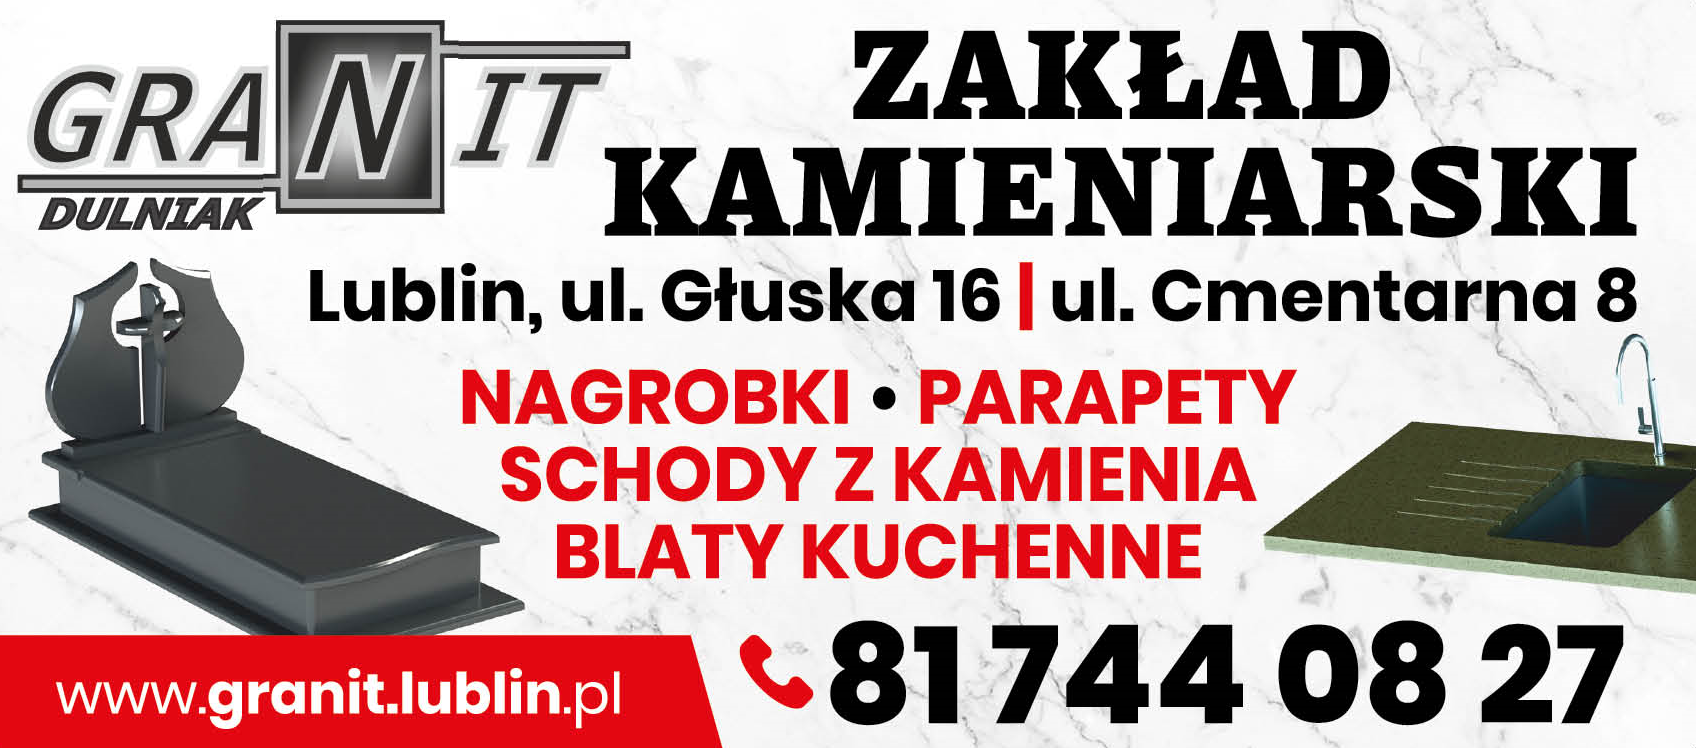 Zakład Kamieniarski "GRANIT" DULNIAK Sp. J. Lublin Nagrobki / Parapety / Schody z Kamienia / Blaty